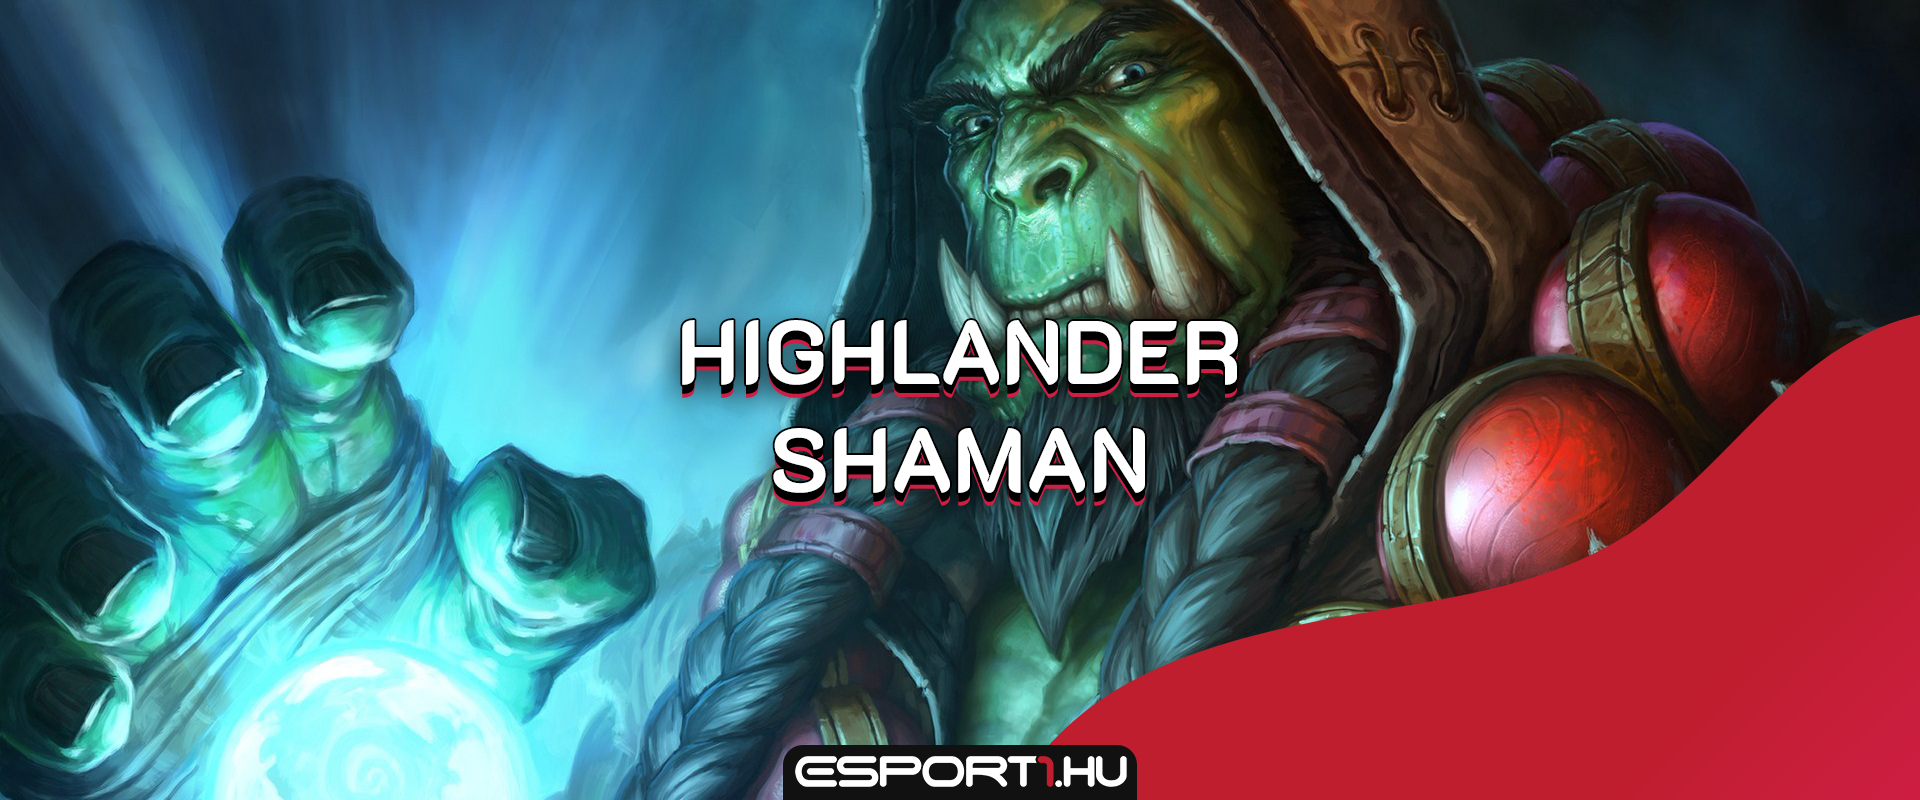 Tíz Legendary, de csak egy maradhat a végén: Highlander Shaman bemutató